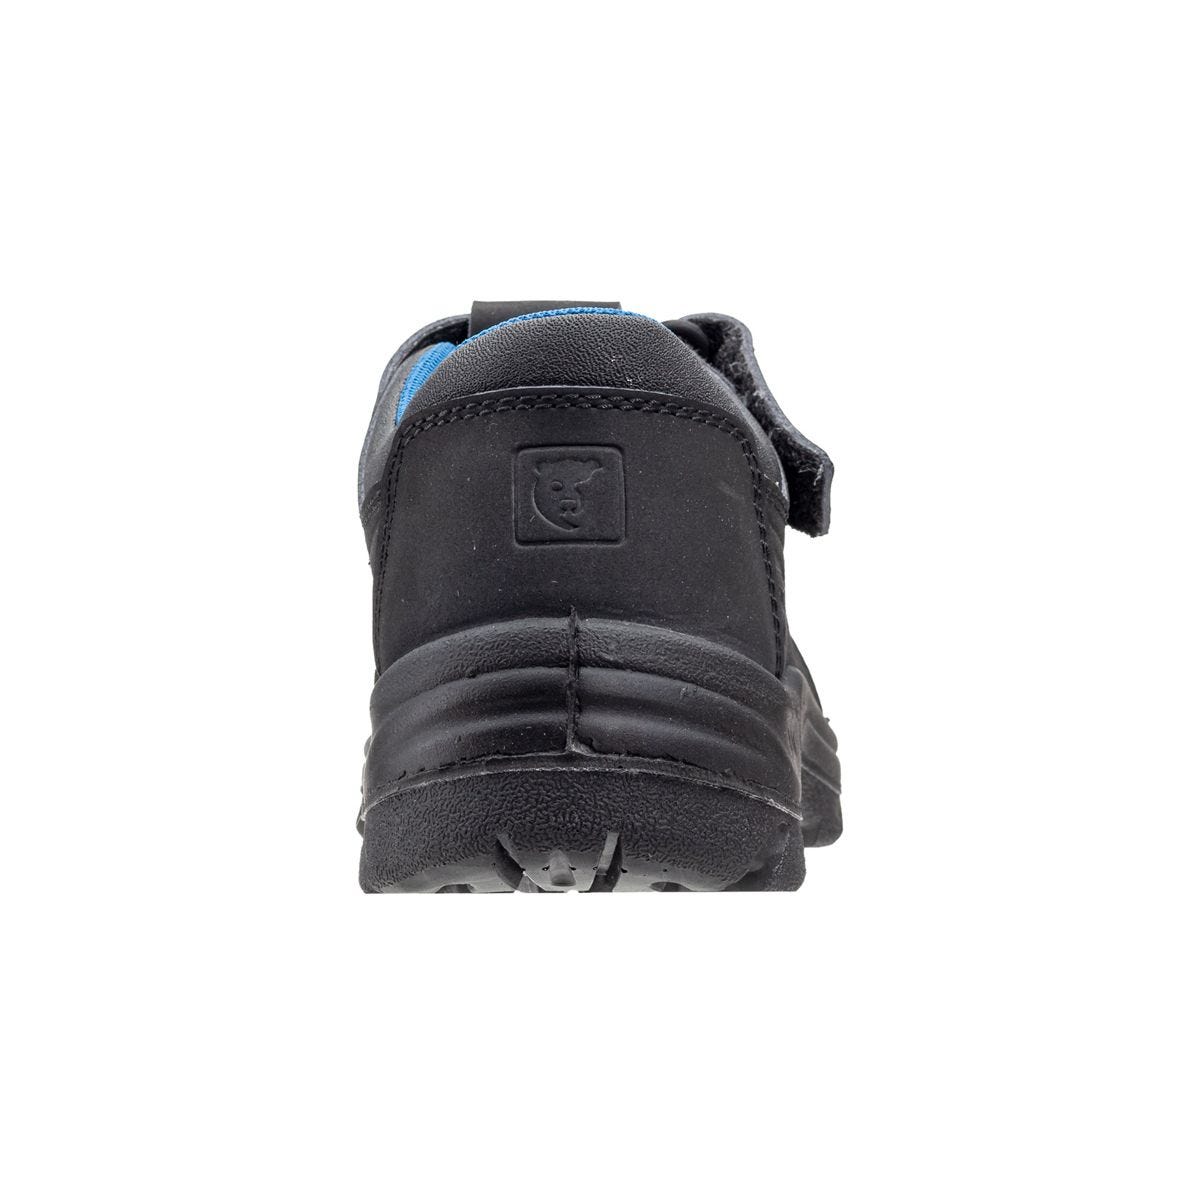 Sandales de sécurité basses Bono II Noir - Coverguard - Taille 37 2